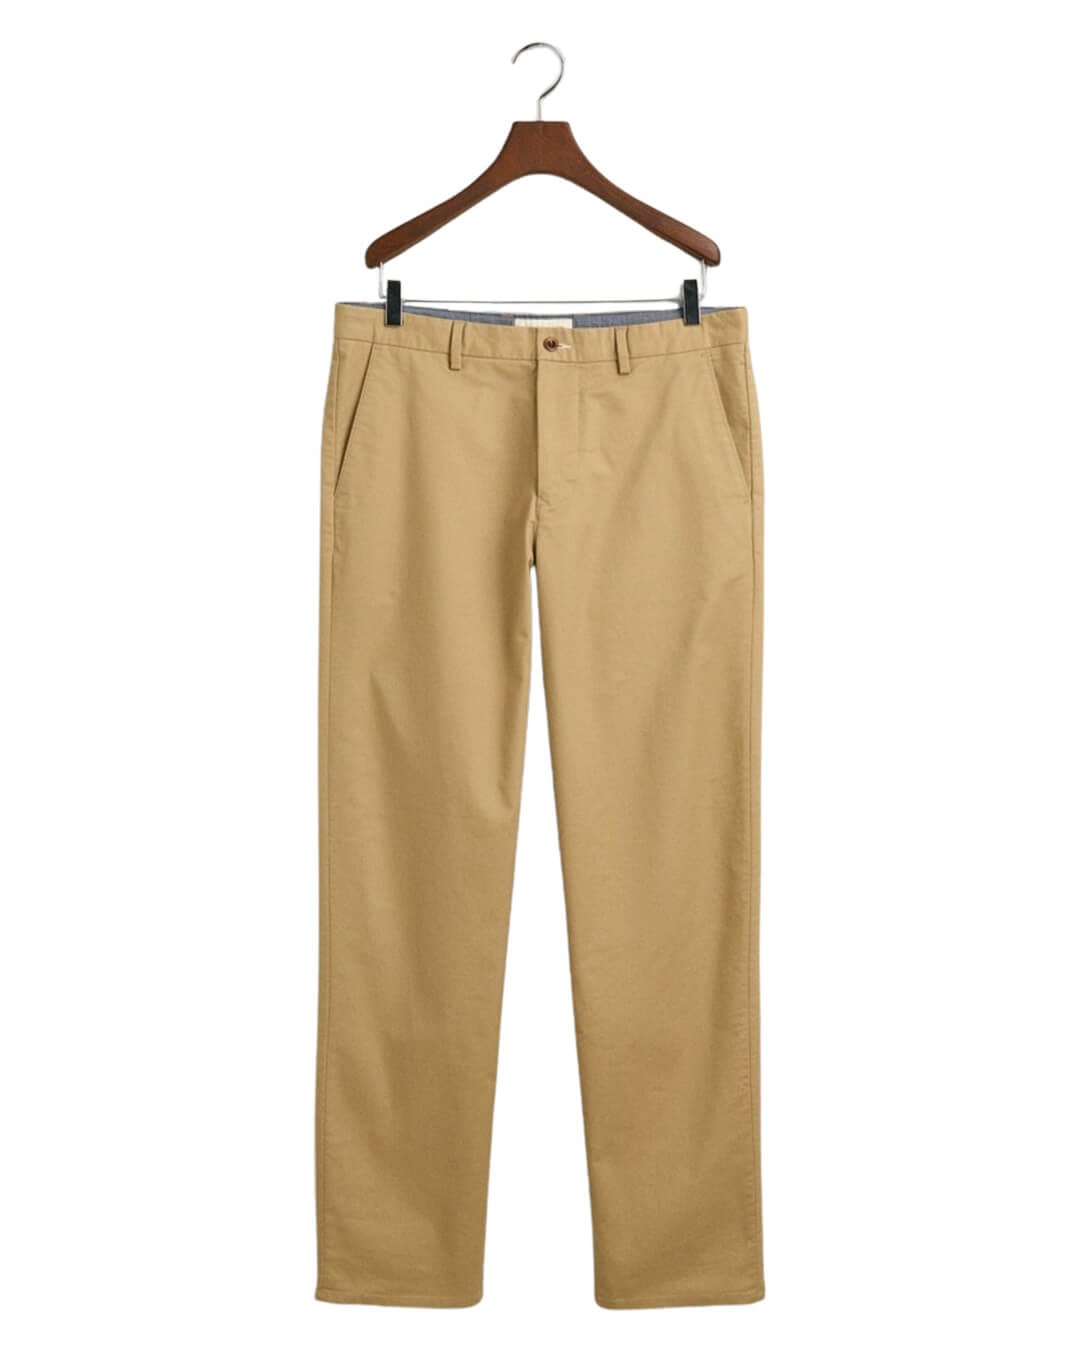 Gant Trousers REGULAR CHINOS G0248 DARK KHAKI